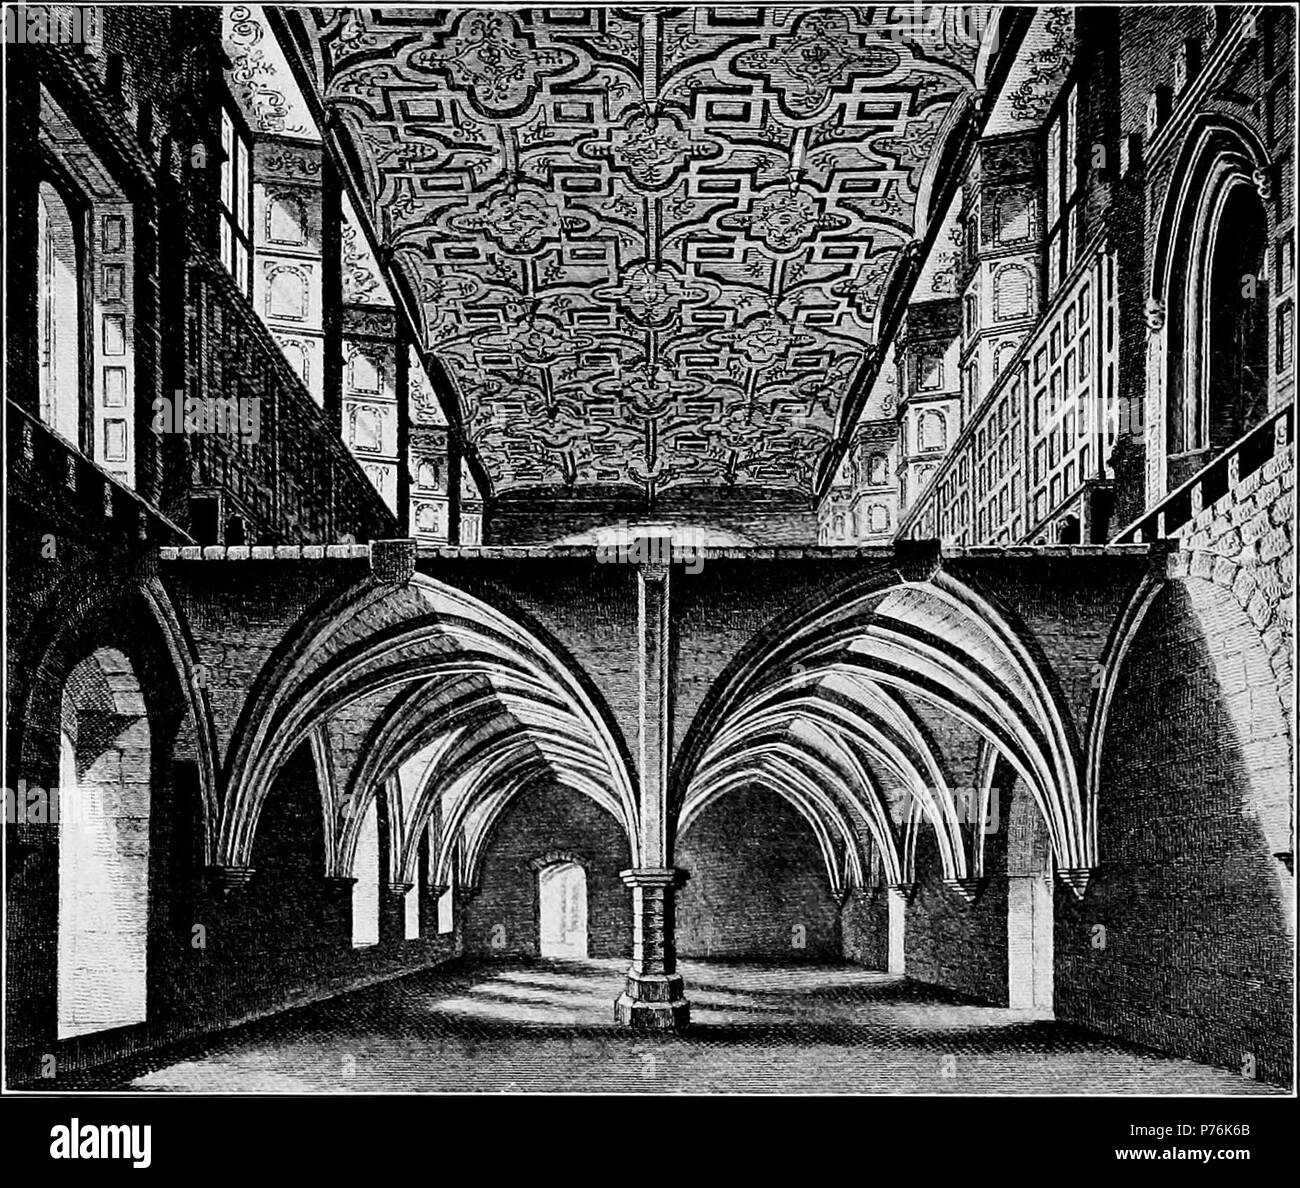 Anglais : plafonds ornementaux dans le couvent de Saint Helen's, Londres. 19124 personnes élisabéthain - plafond Sainte-hélène Banque D'Images